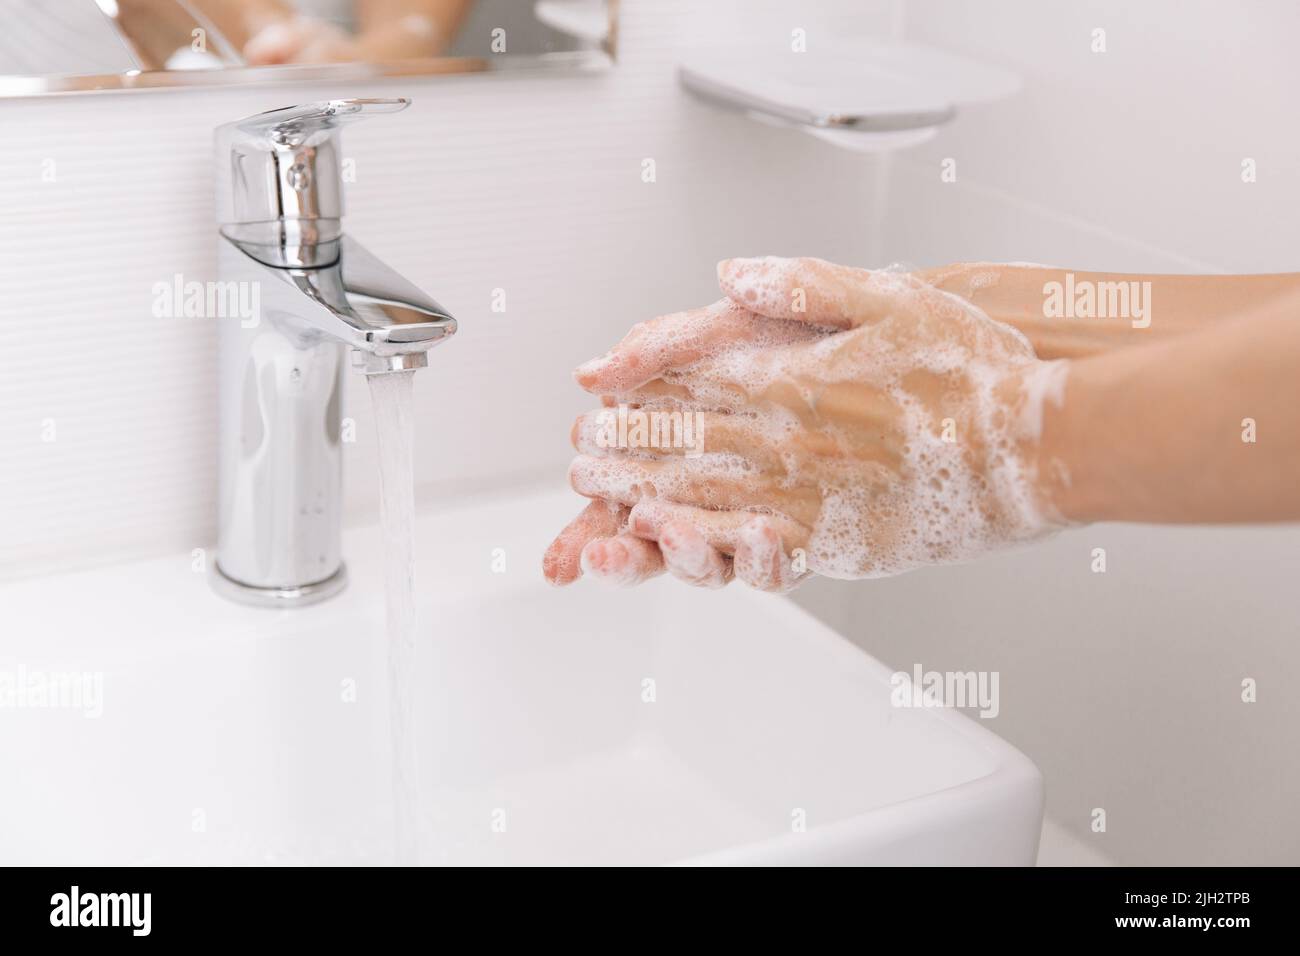 Lavarsi le mani sotto il rubinetto dell'acqua corrente. Dettagli della mano del concetto di igiene. Lavando le mani strofinando con sapone per la prevenzione del virus corona, igiene per fermare Foto Stock